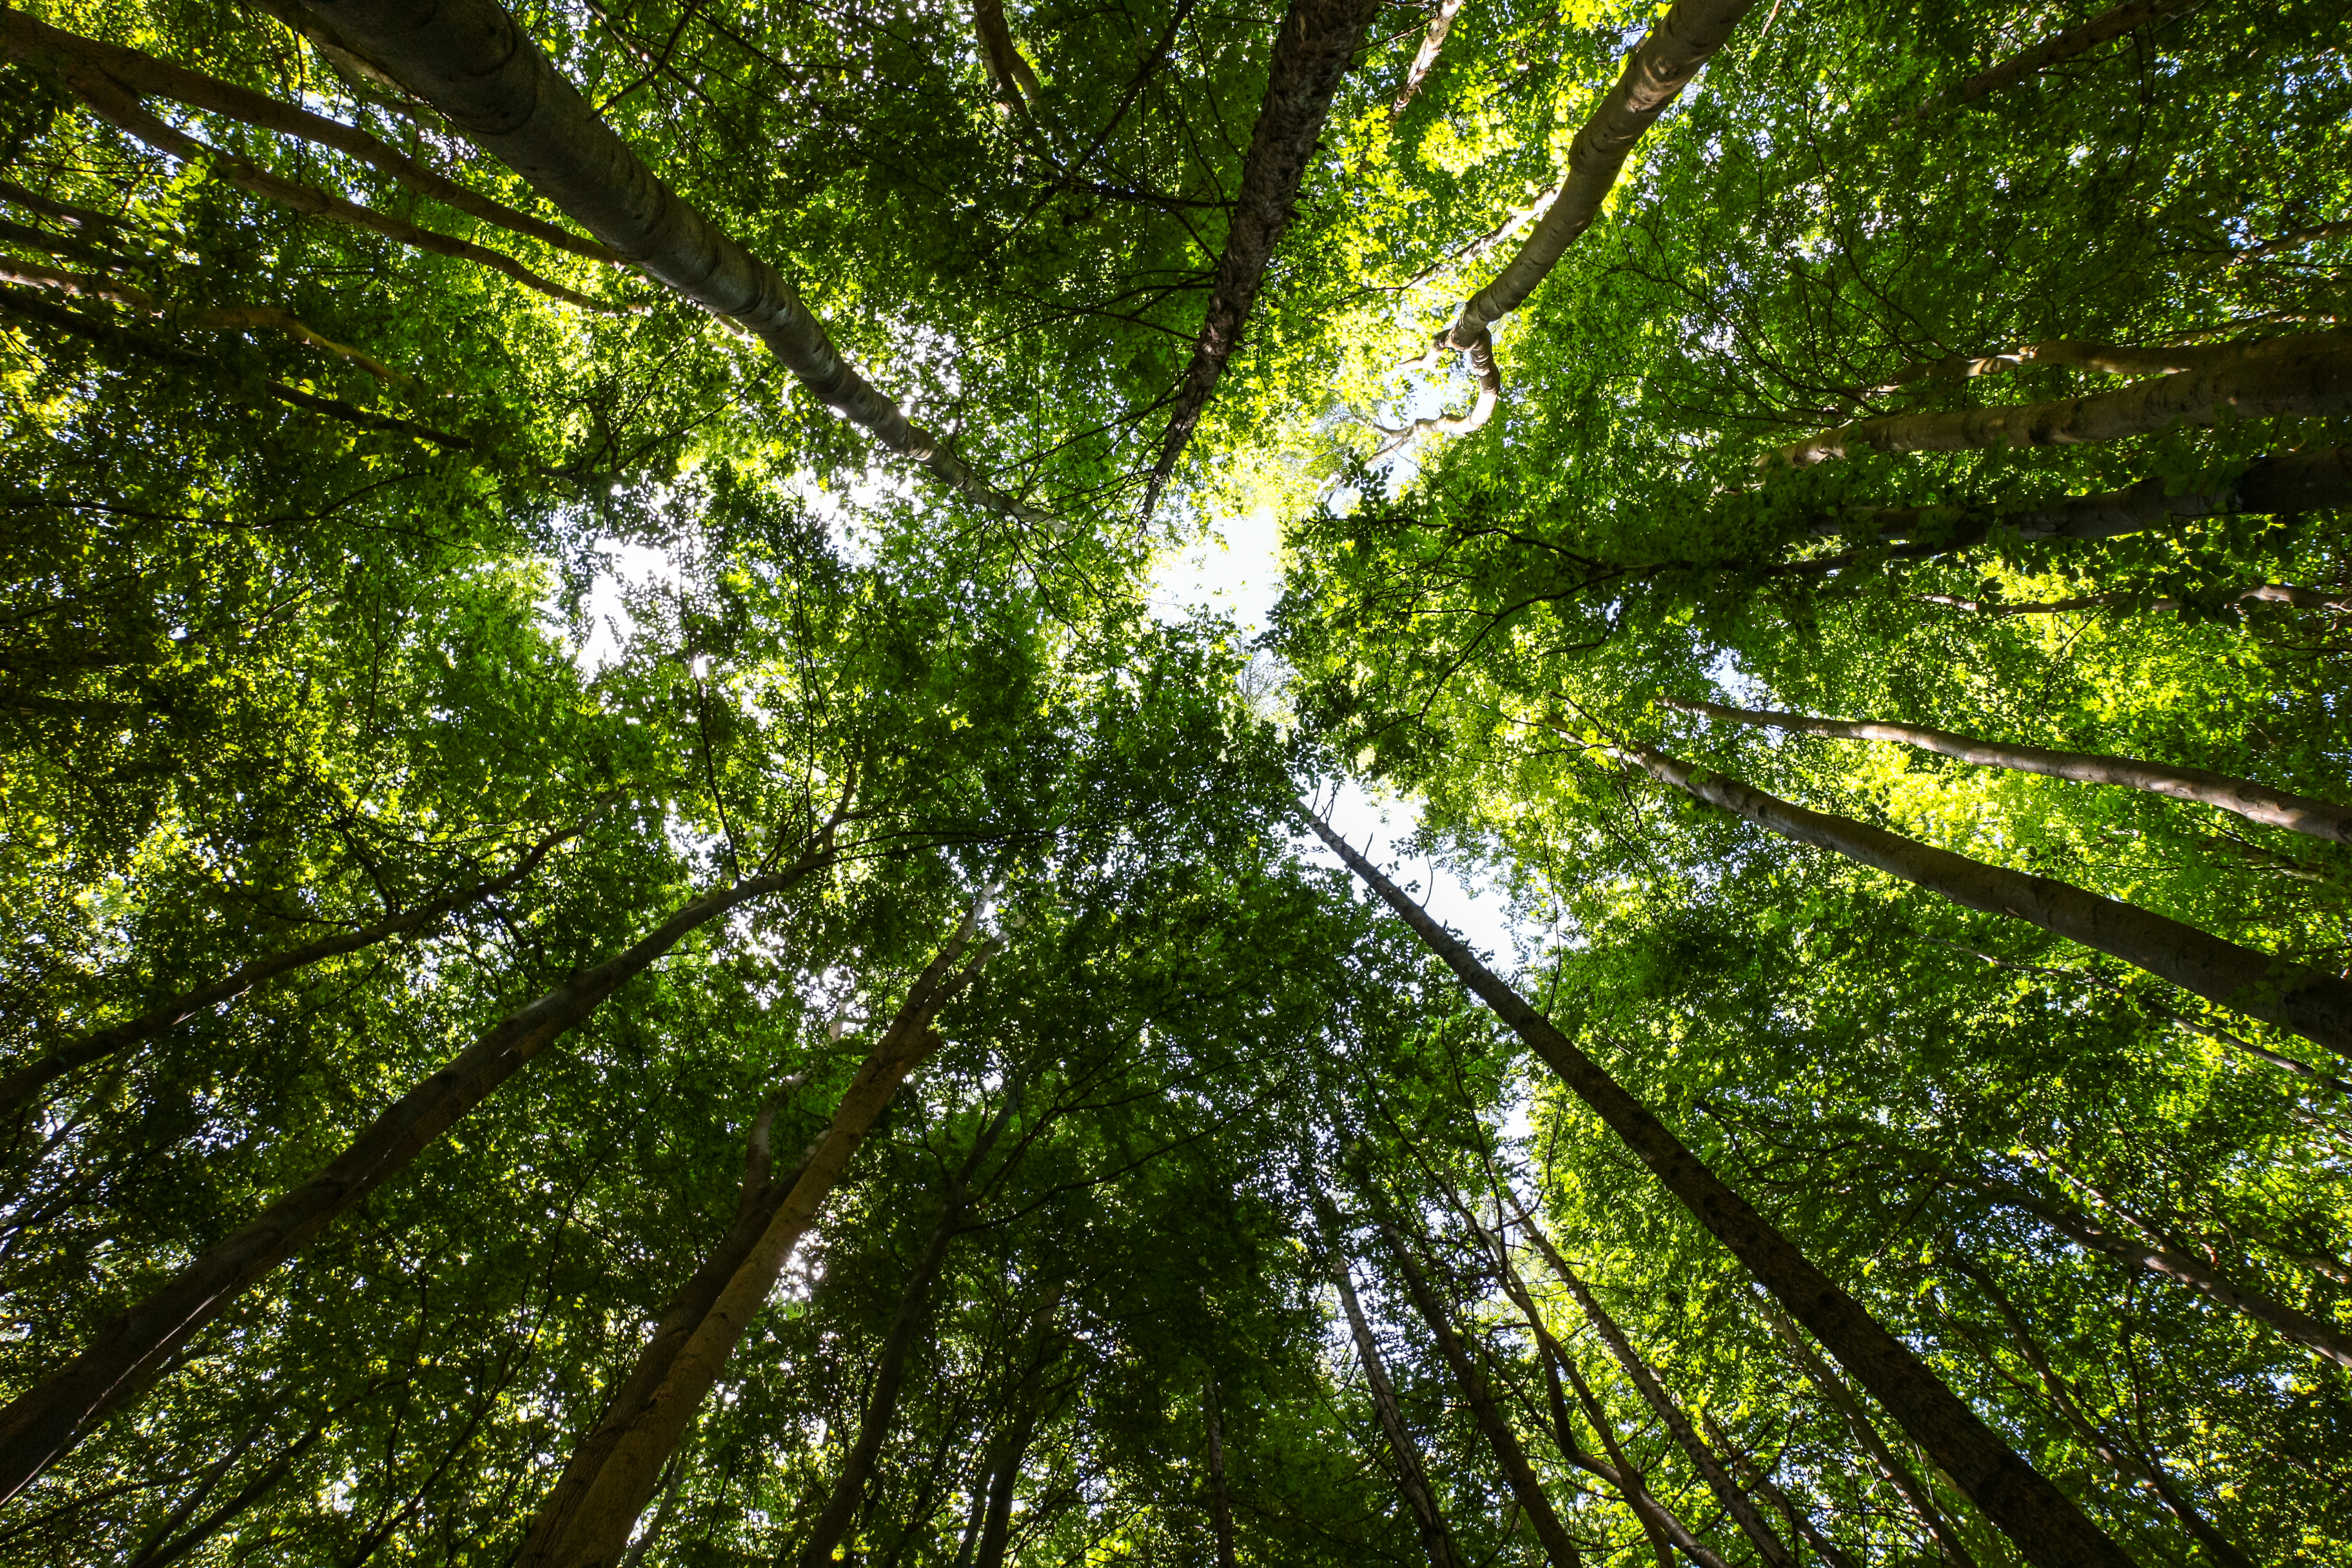 Rapport spécial 21/2021: Financement de l'UE en faveur de la biodiversité et de la lutte contre le changement climatique dans ses forêts: des résultats positifs mais limités